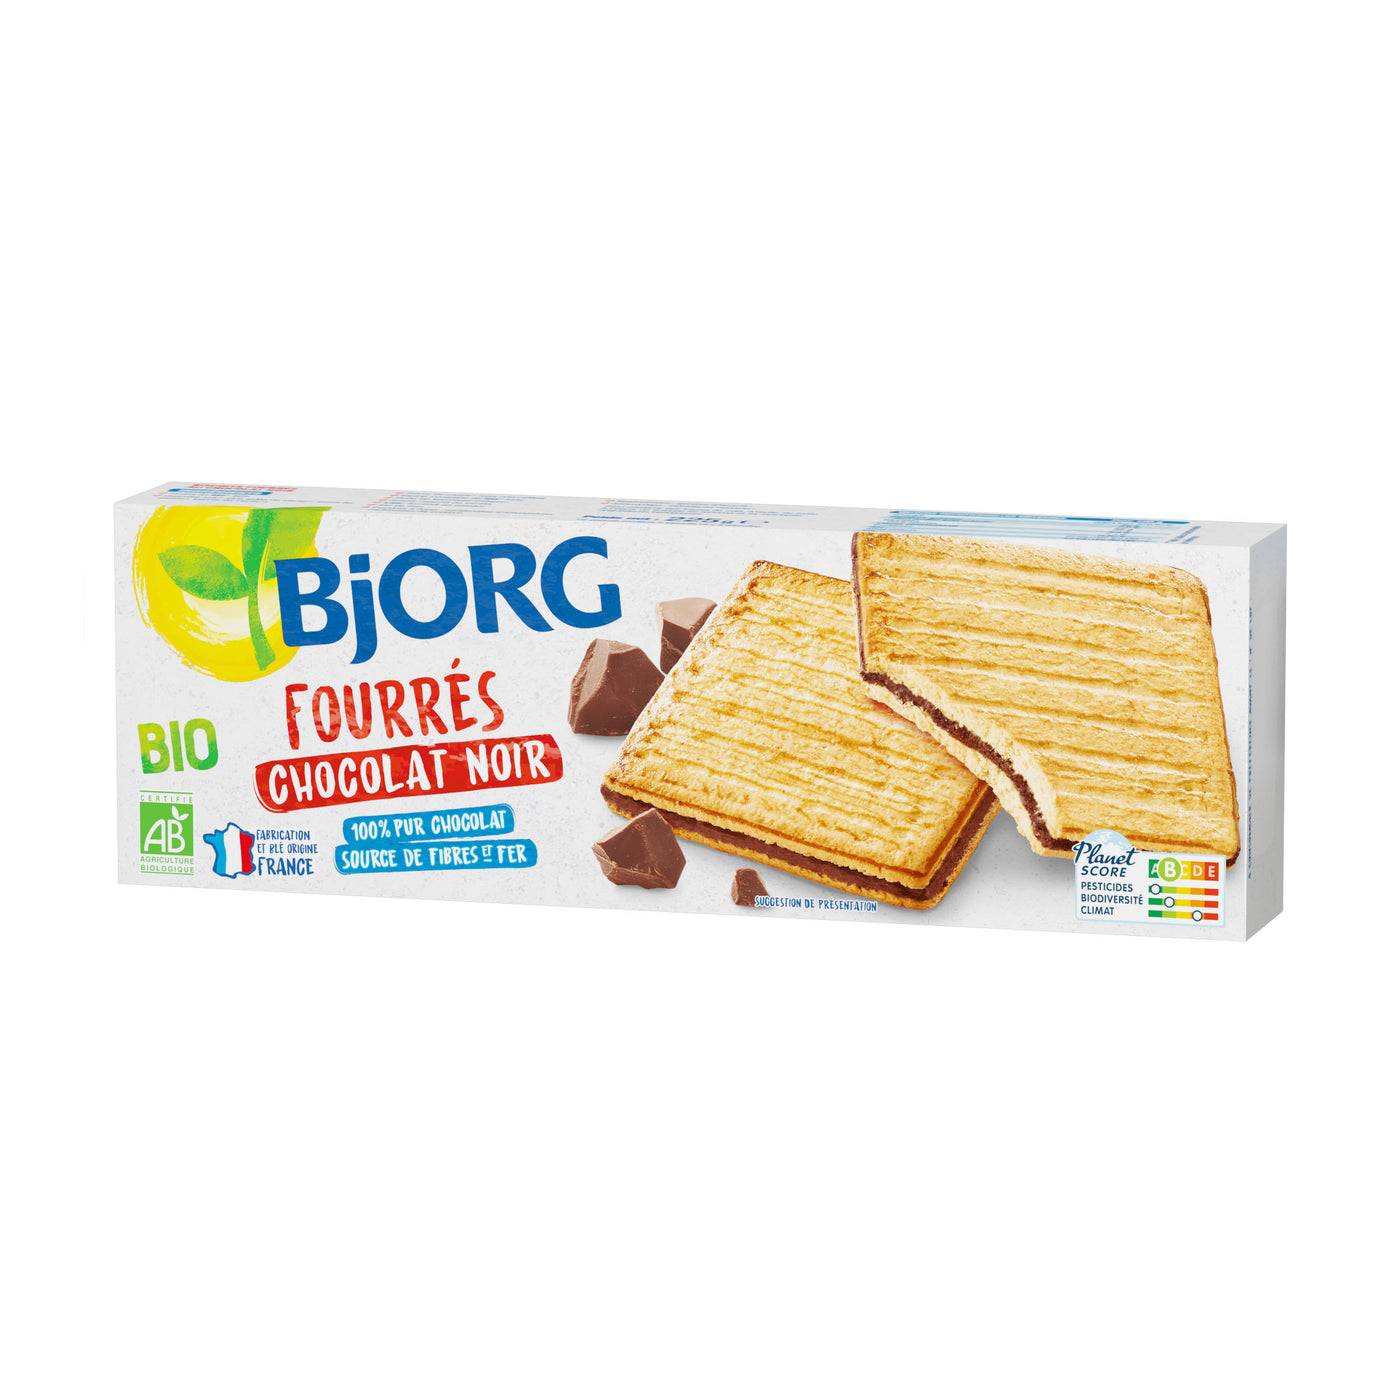 Bjorg Biscuit Fourre Chocolat Noir Bio 150g